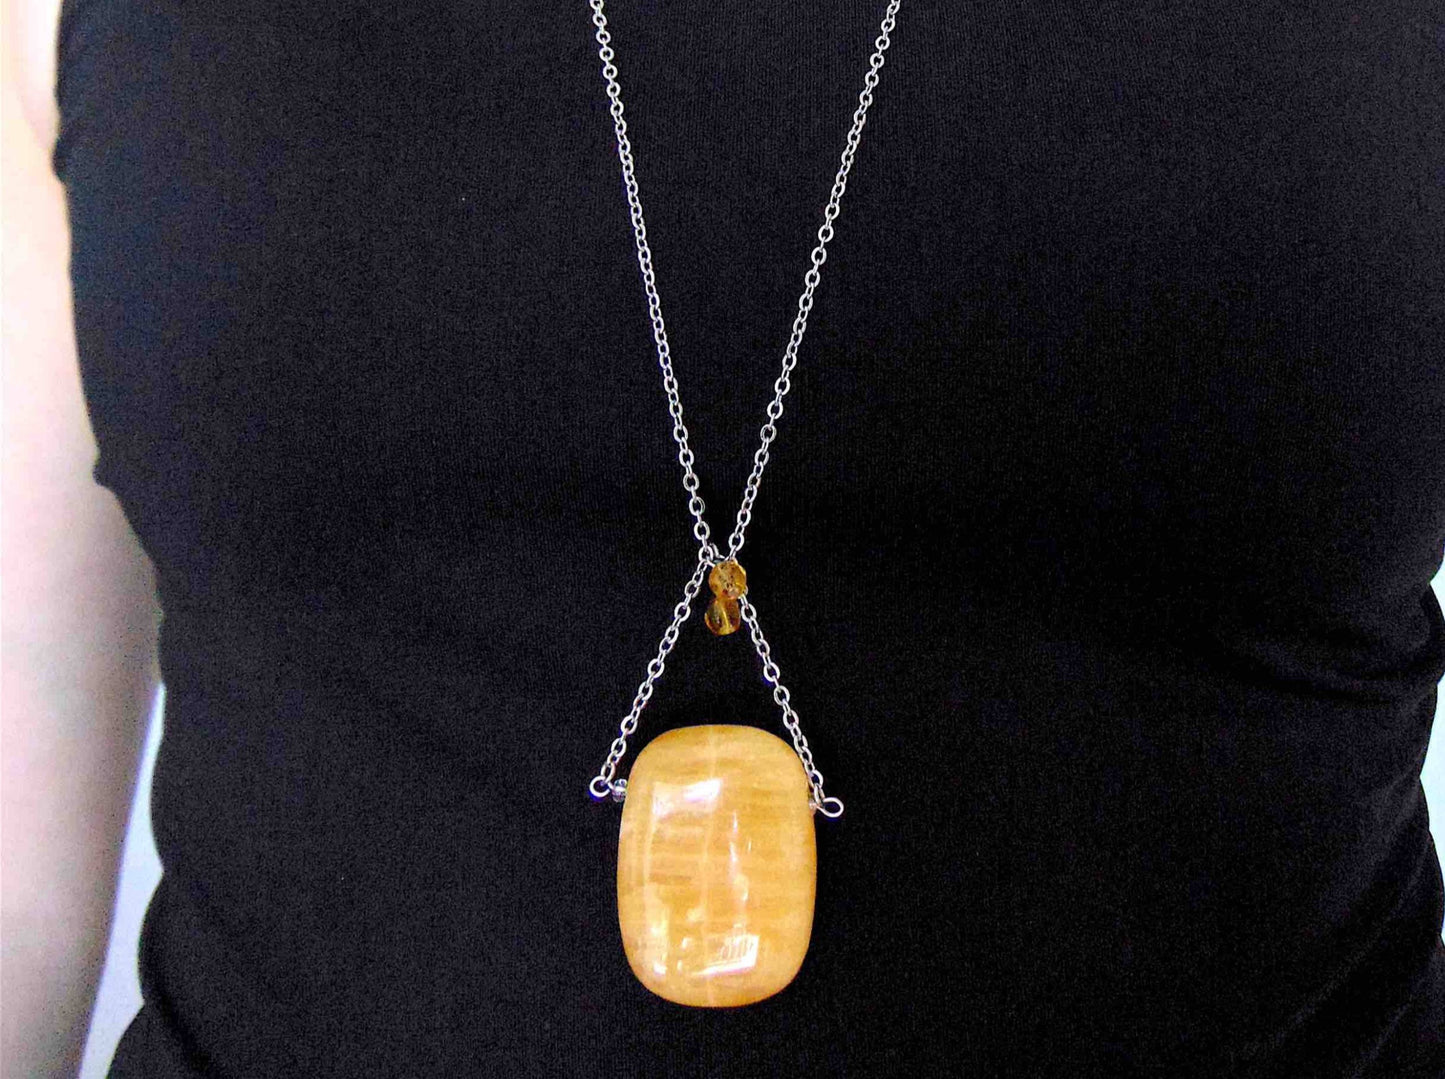 Collier 30 po avec pendentif rectangle arrondi de pierre calcite jaune miel, montage triangulaire, billes de verre assorties, chaîne acier inoxydable